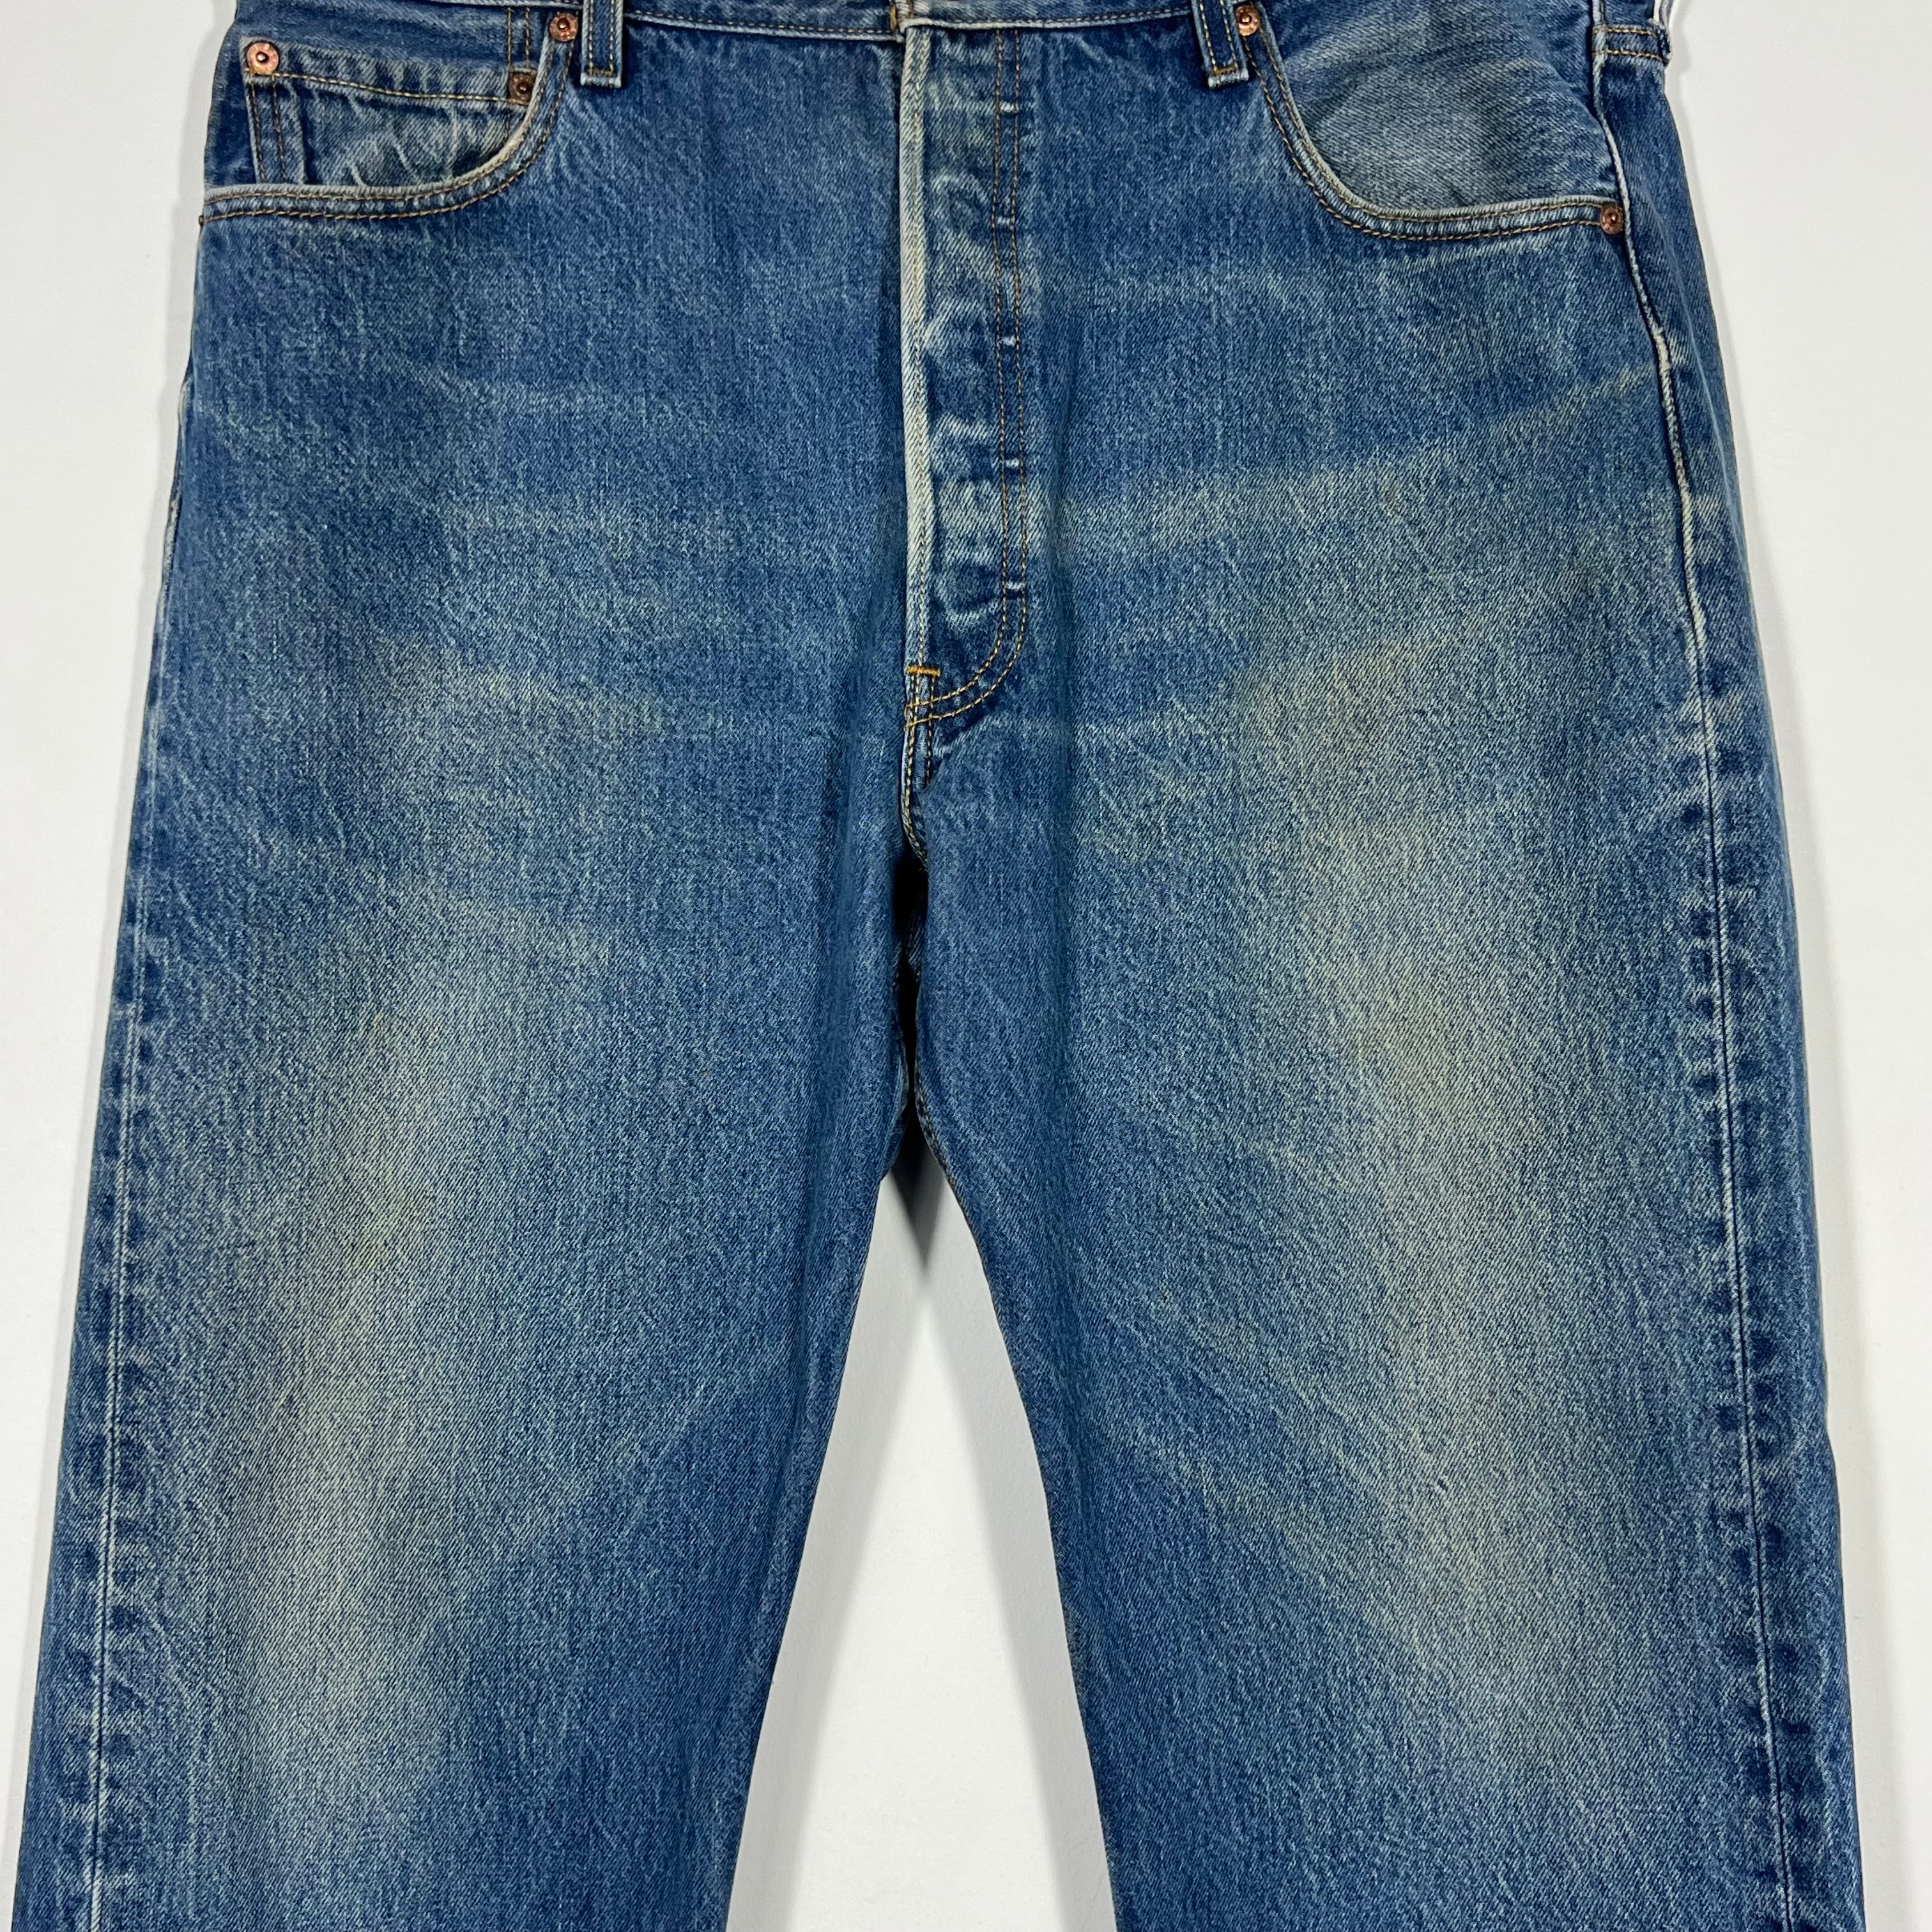 Vintage Levis 501 Jeans - Men's 38/31